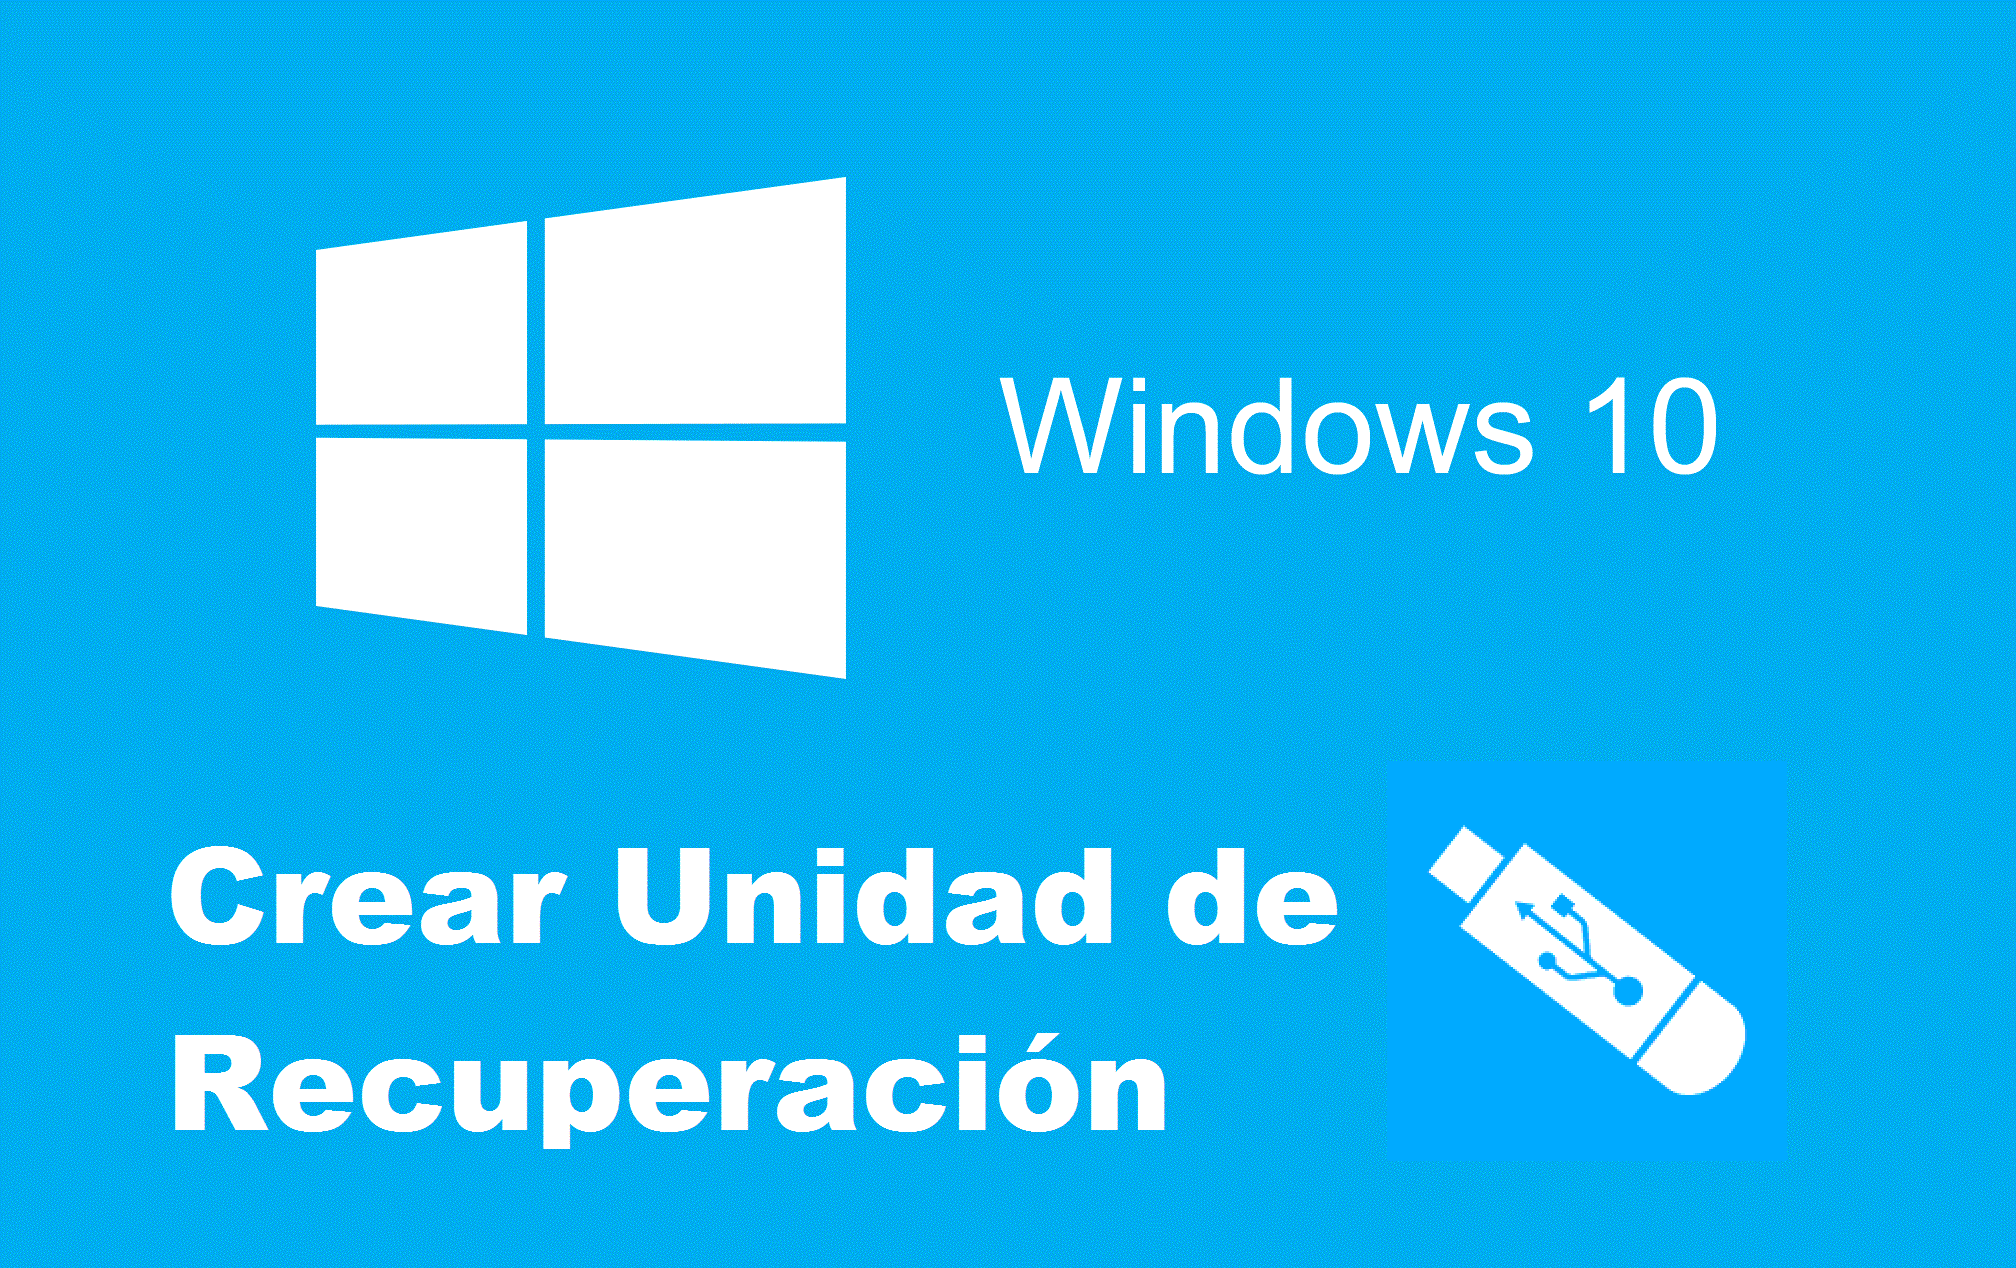 Unidad de recuperaciónn en Windows 10.